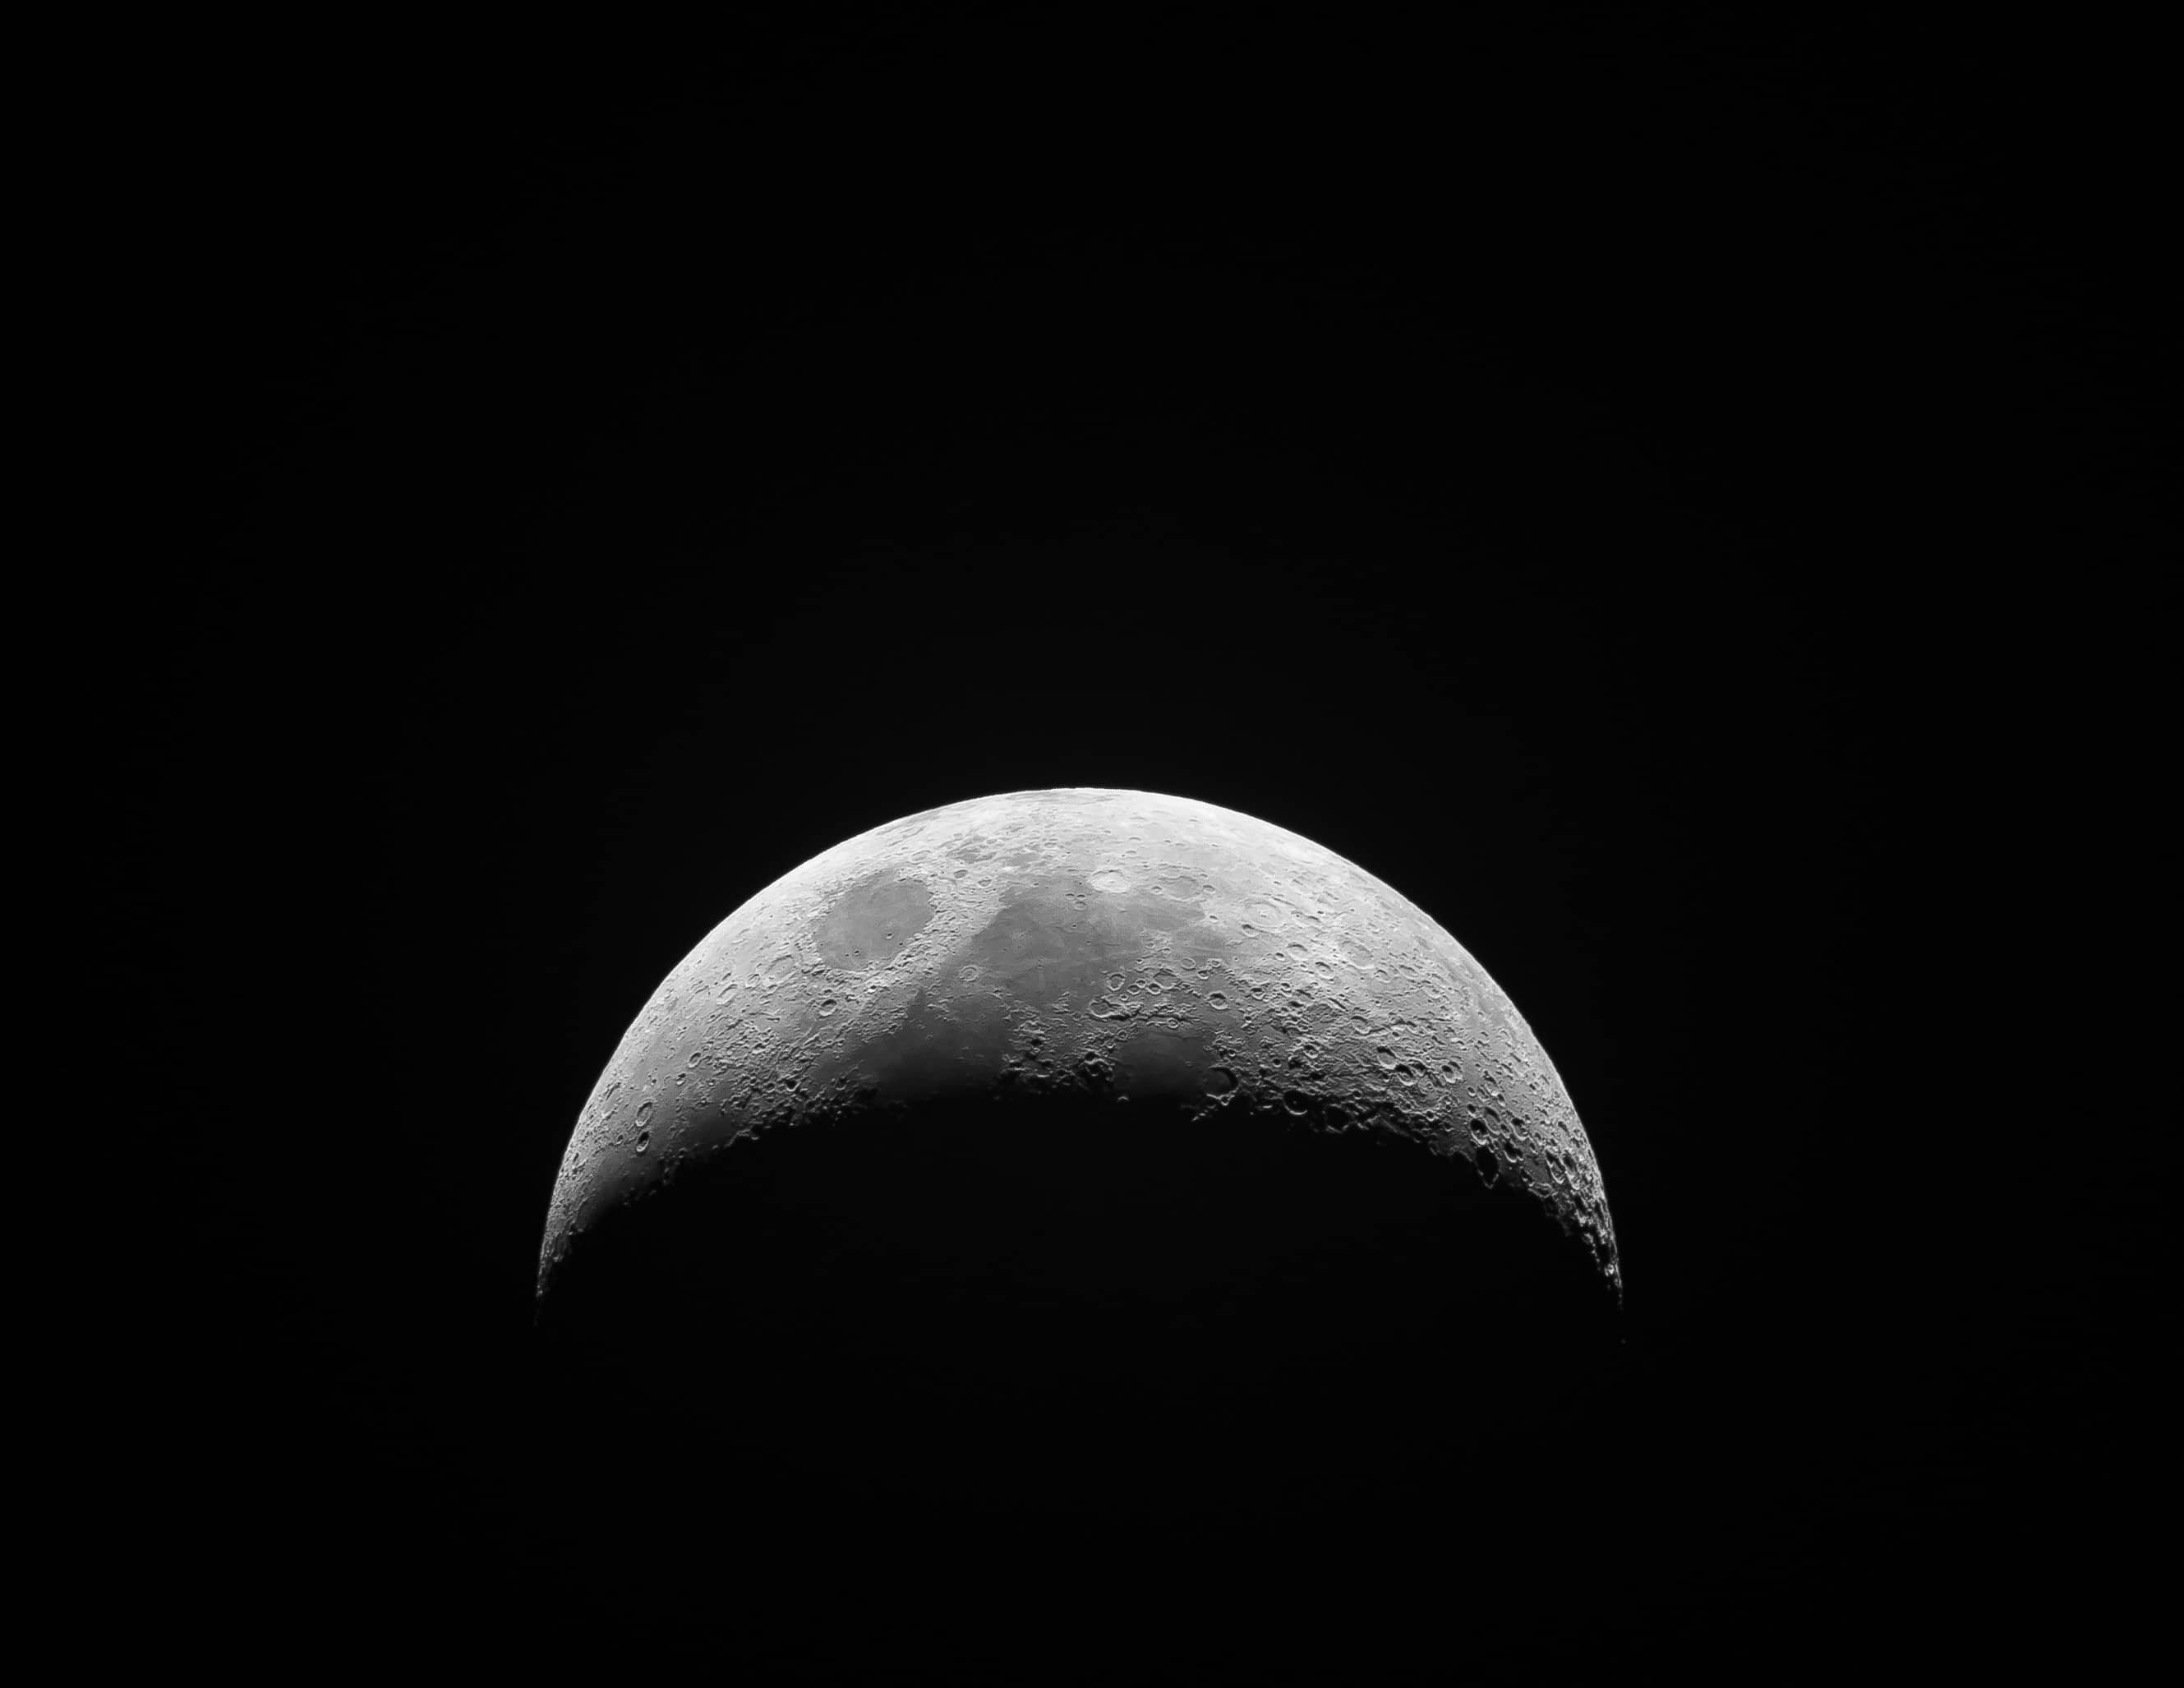 moon close up image